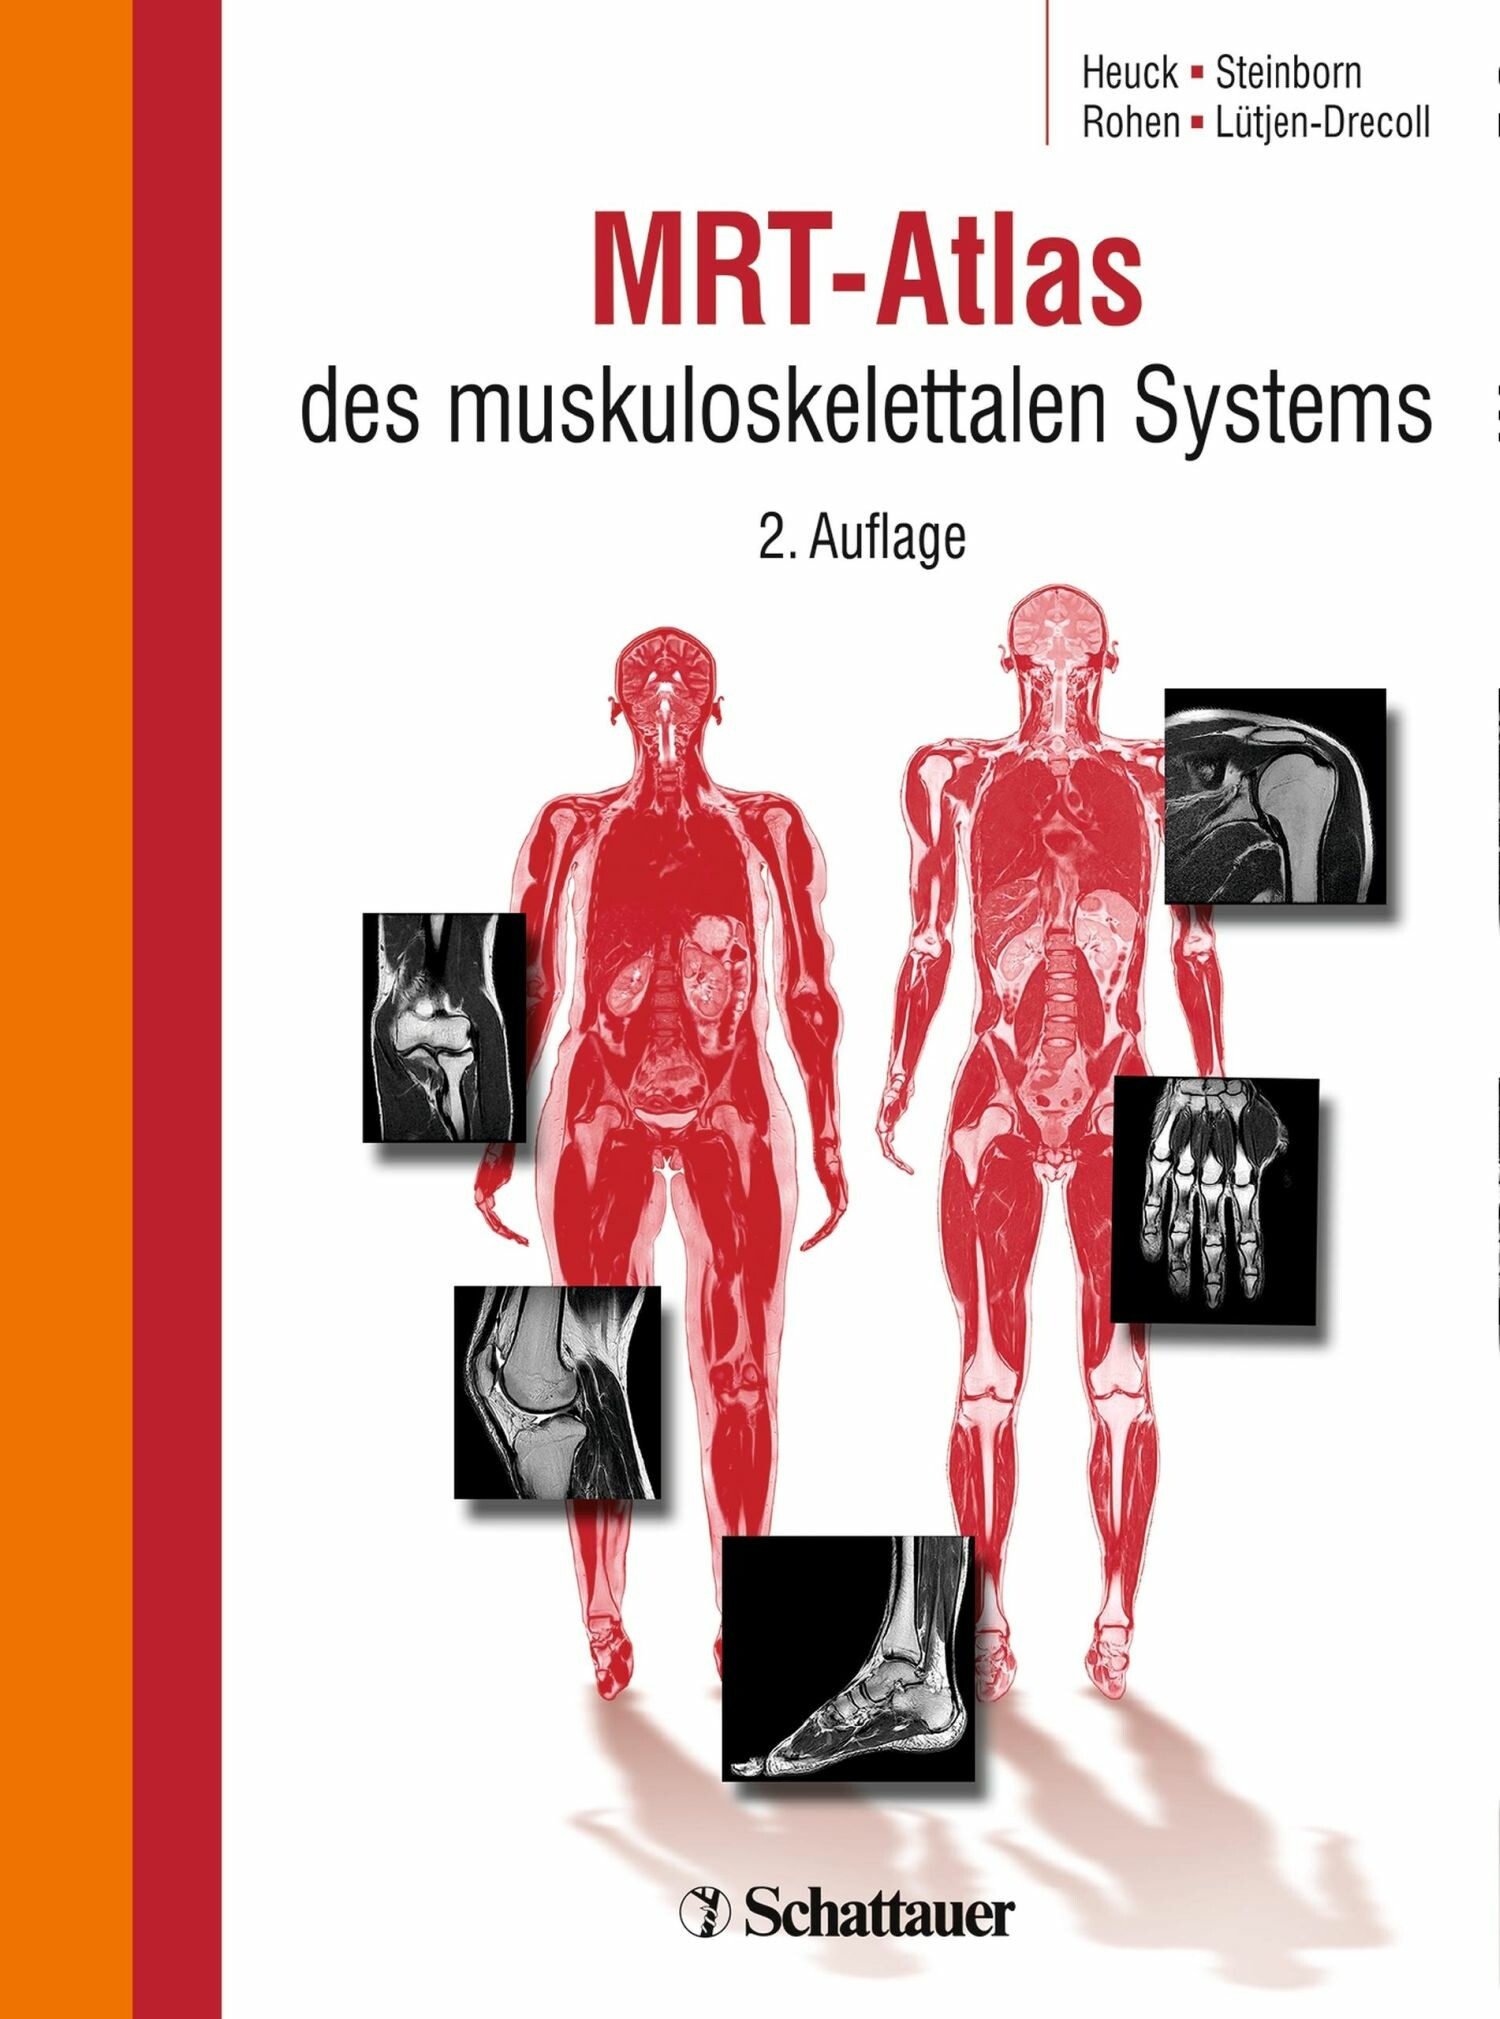 MRT-Atlas des muskuloskelettalen Systems